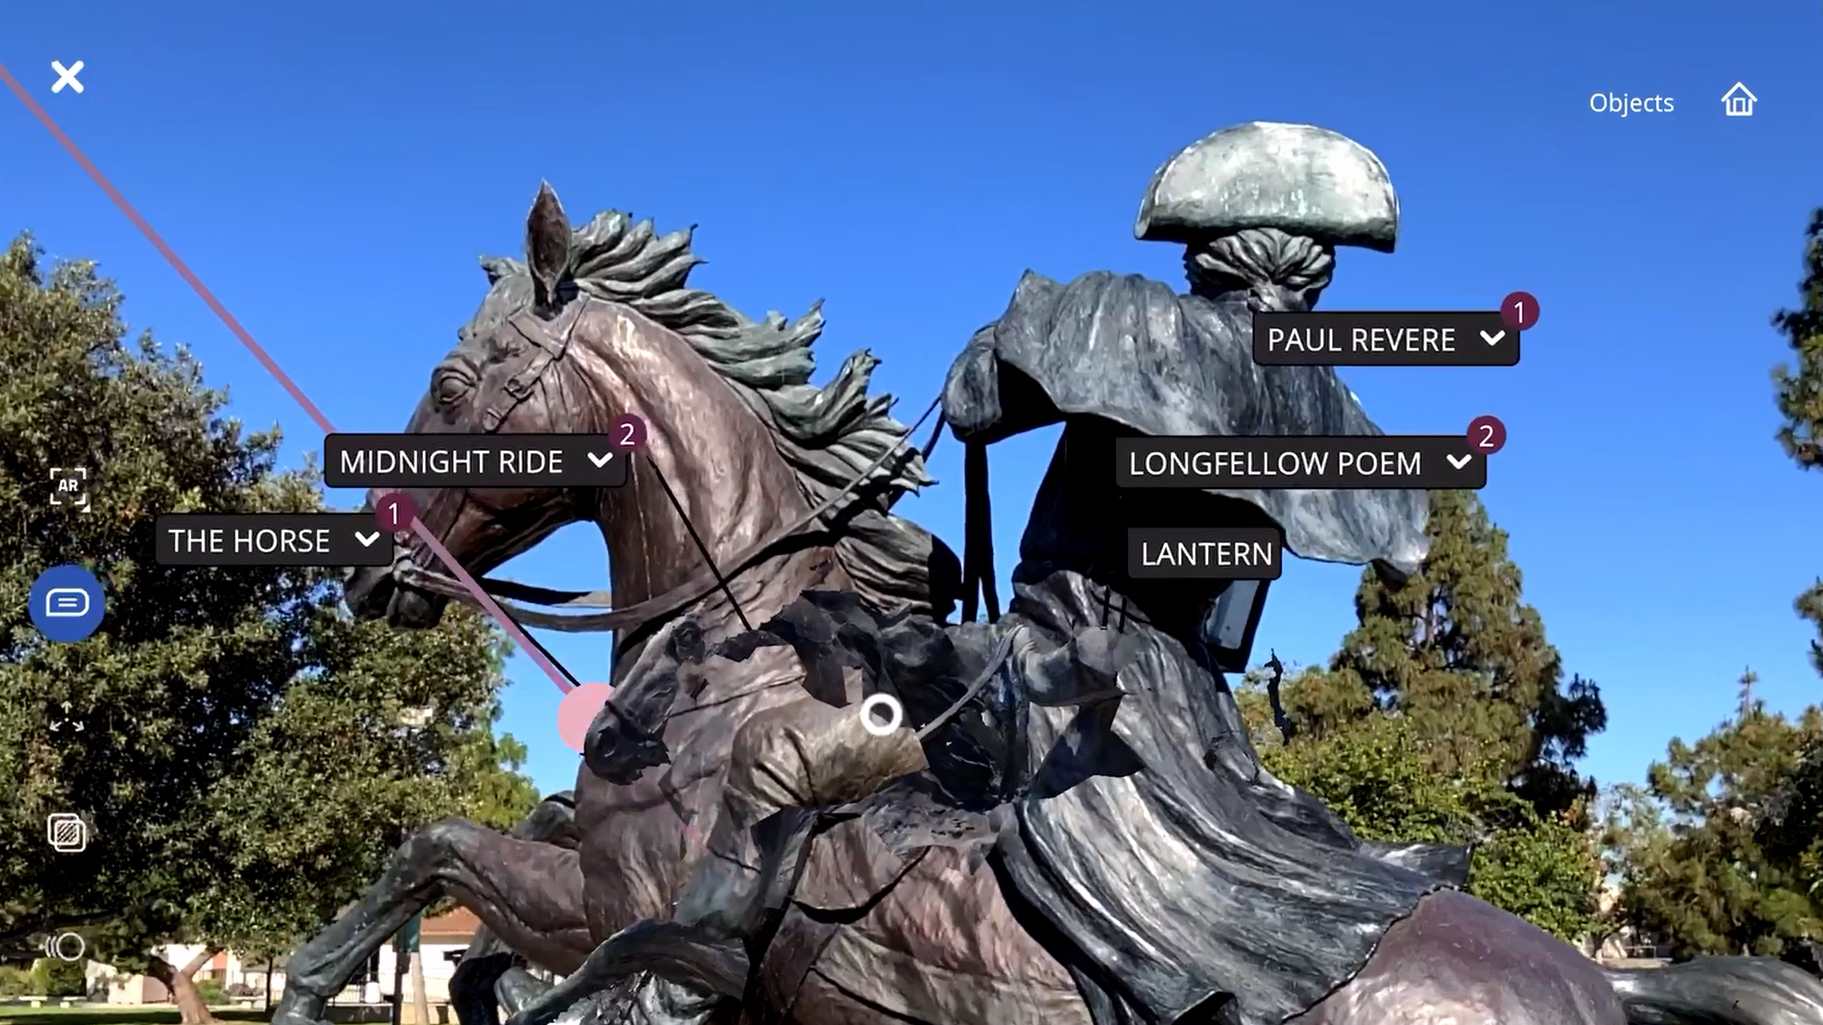 Paul Revere Statue in Heritage Park in City of Cerritos, California